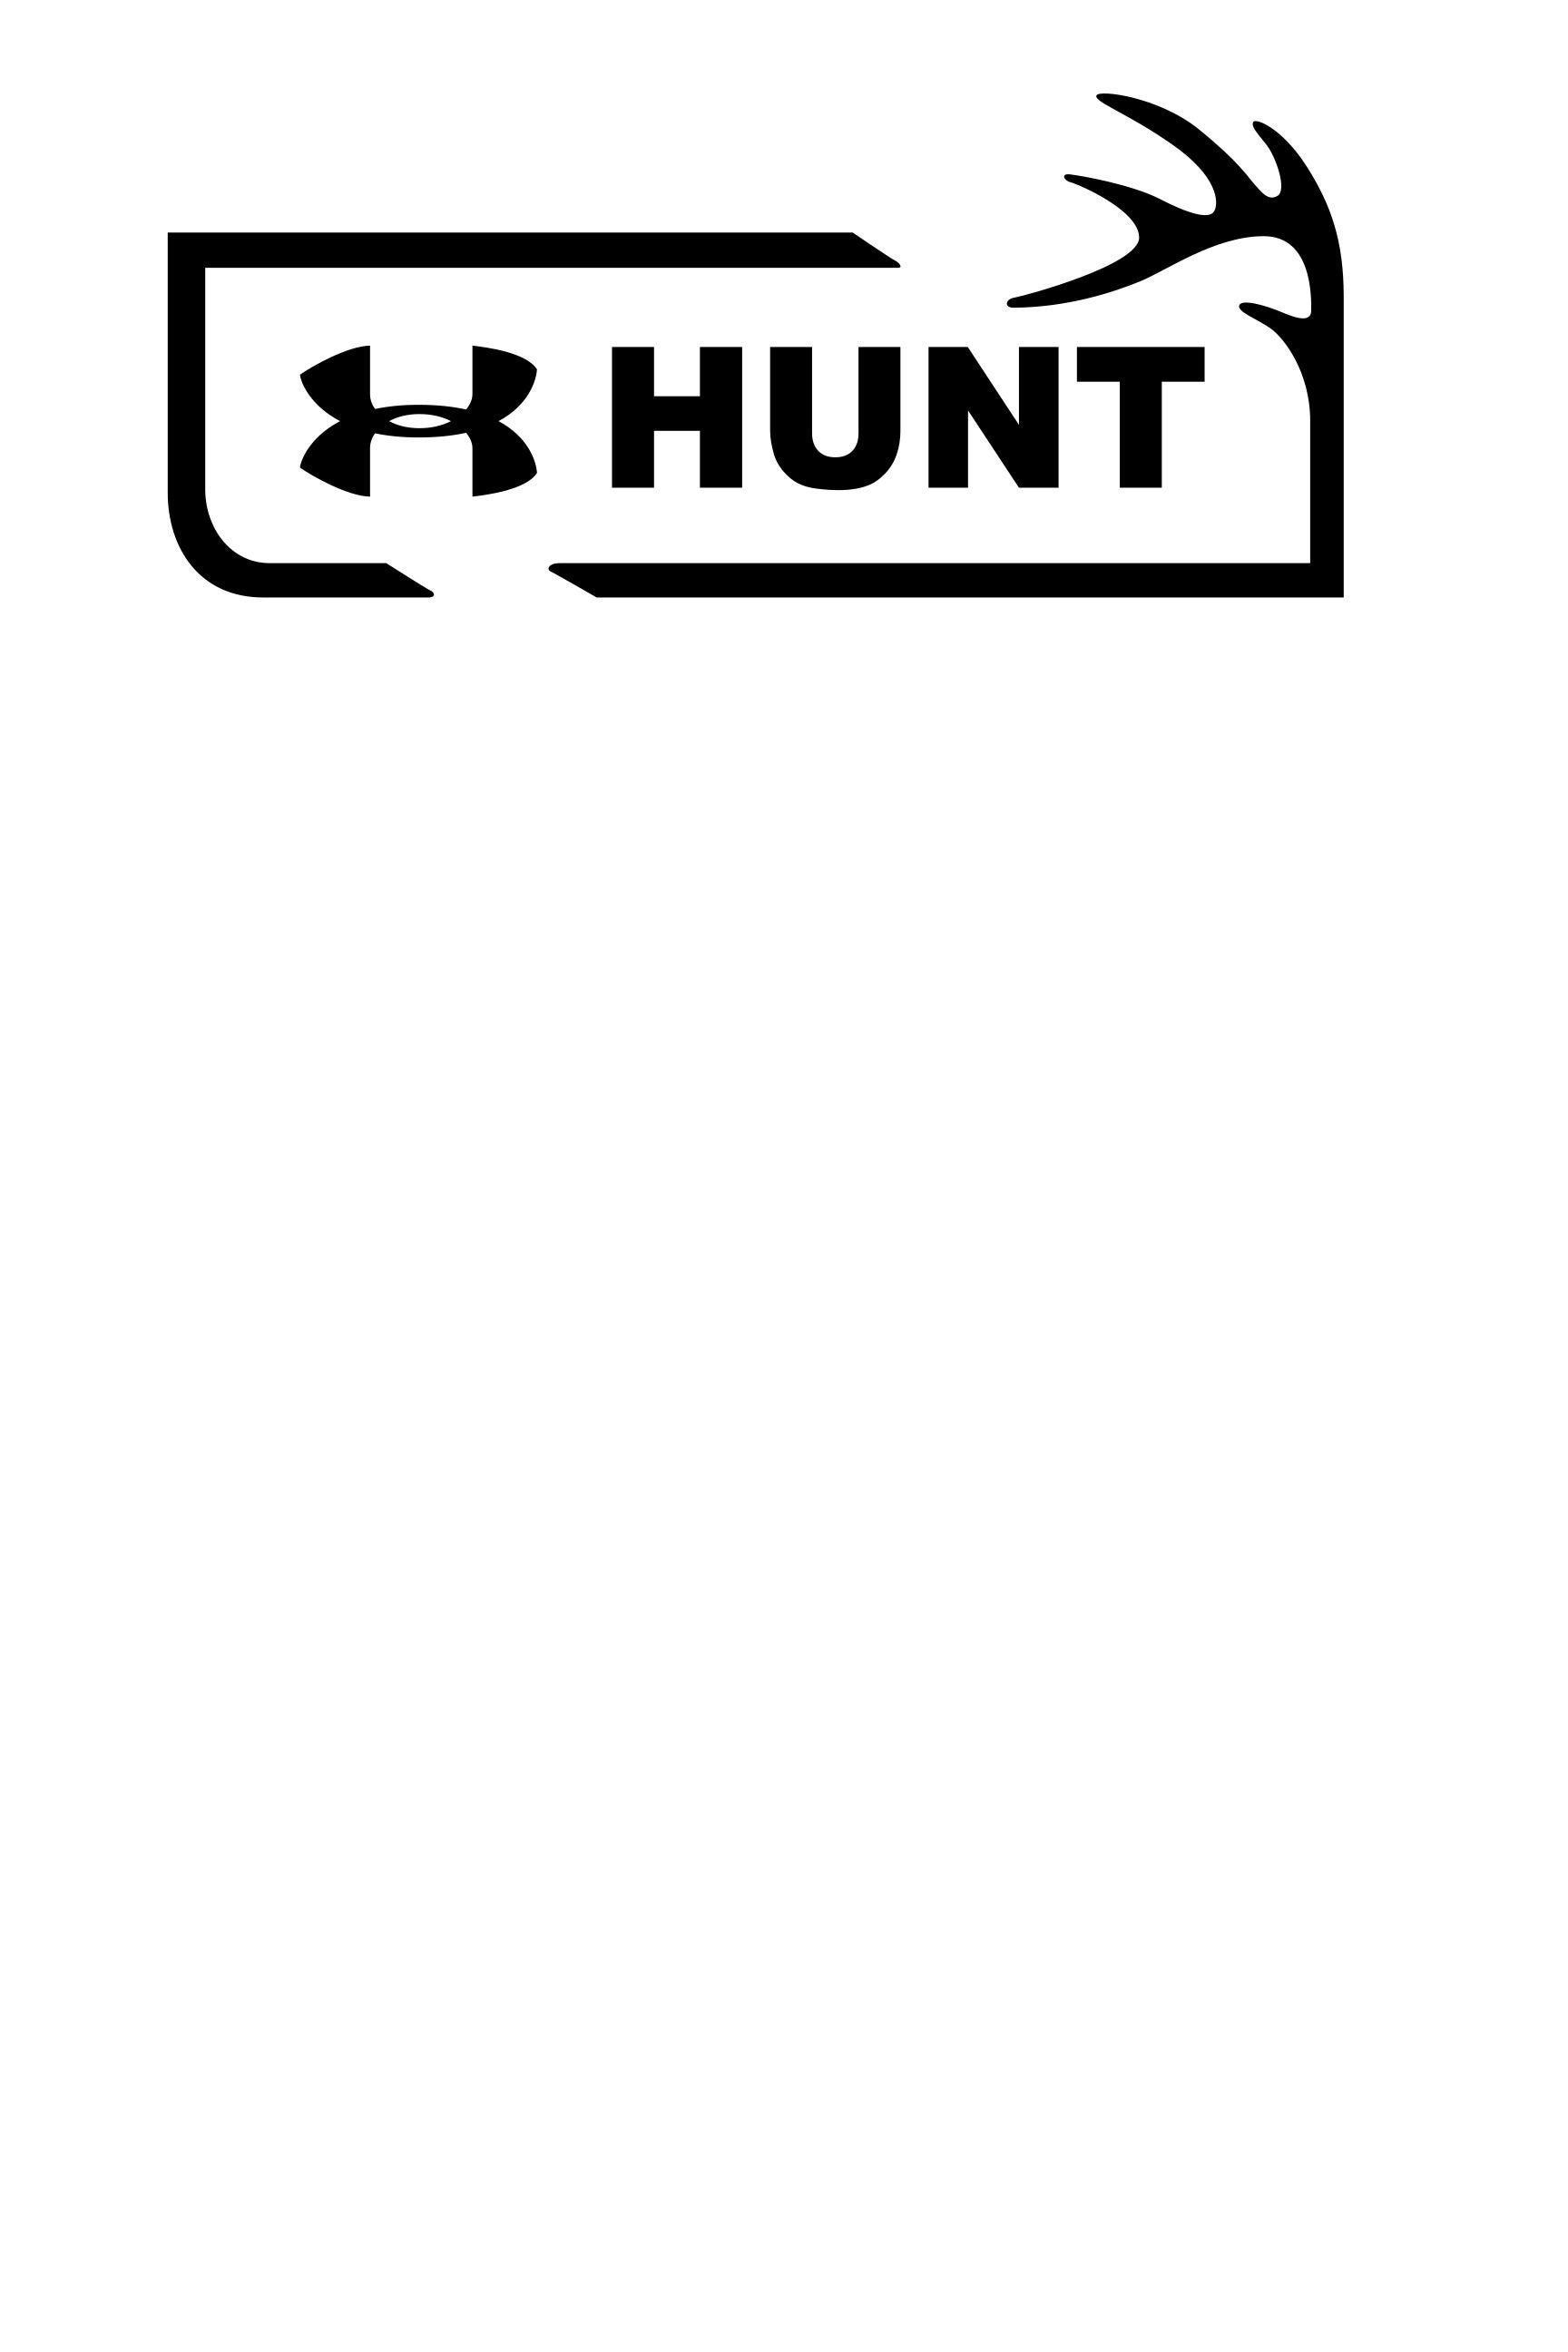 Download Under Armour Hunt Logo SVG | Etsy